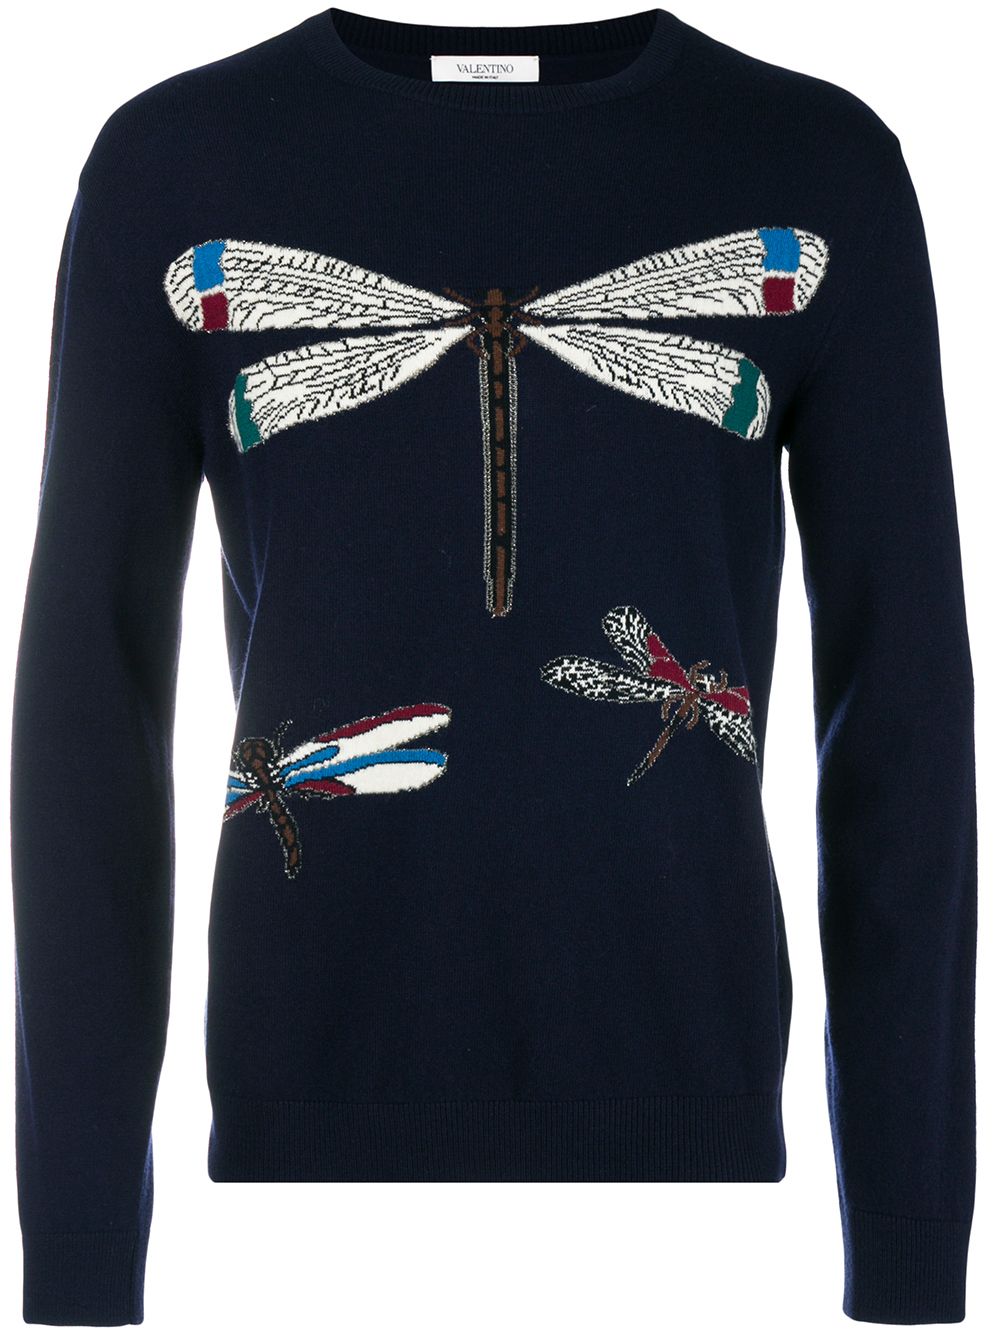 фото Valentino трикотажный свитер с изображением стрекоз